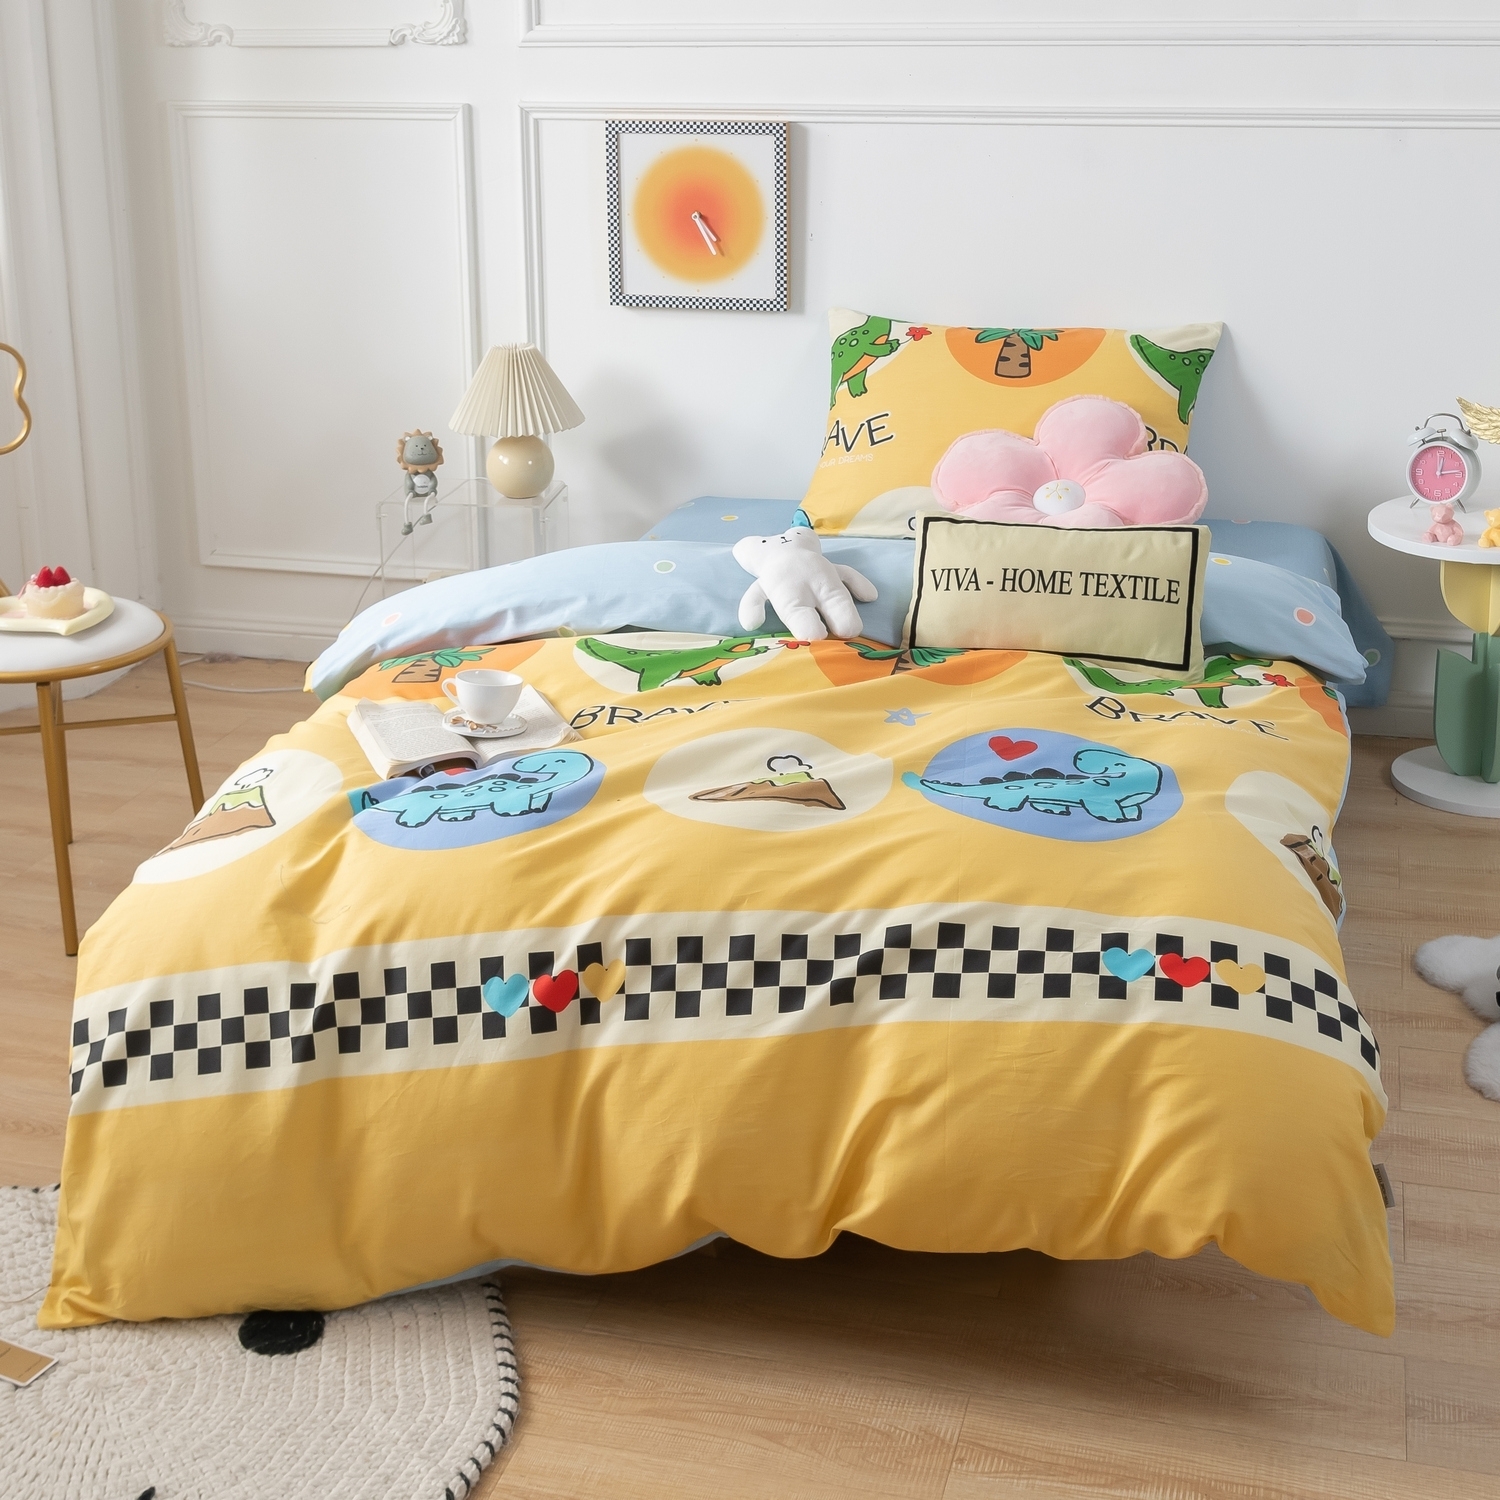 Комплект детского постельного белья Ситрейд  разноцветный CIT-2041183307 комплект постельного белья сатин люкс kids 100% хлопок ситрейд 1 5 спальный